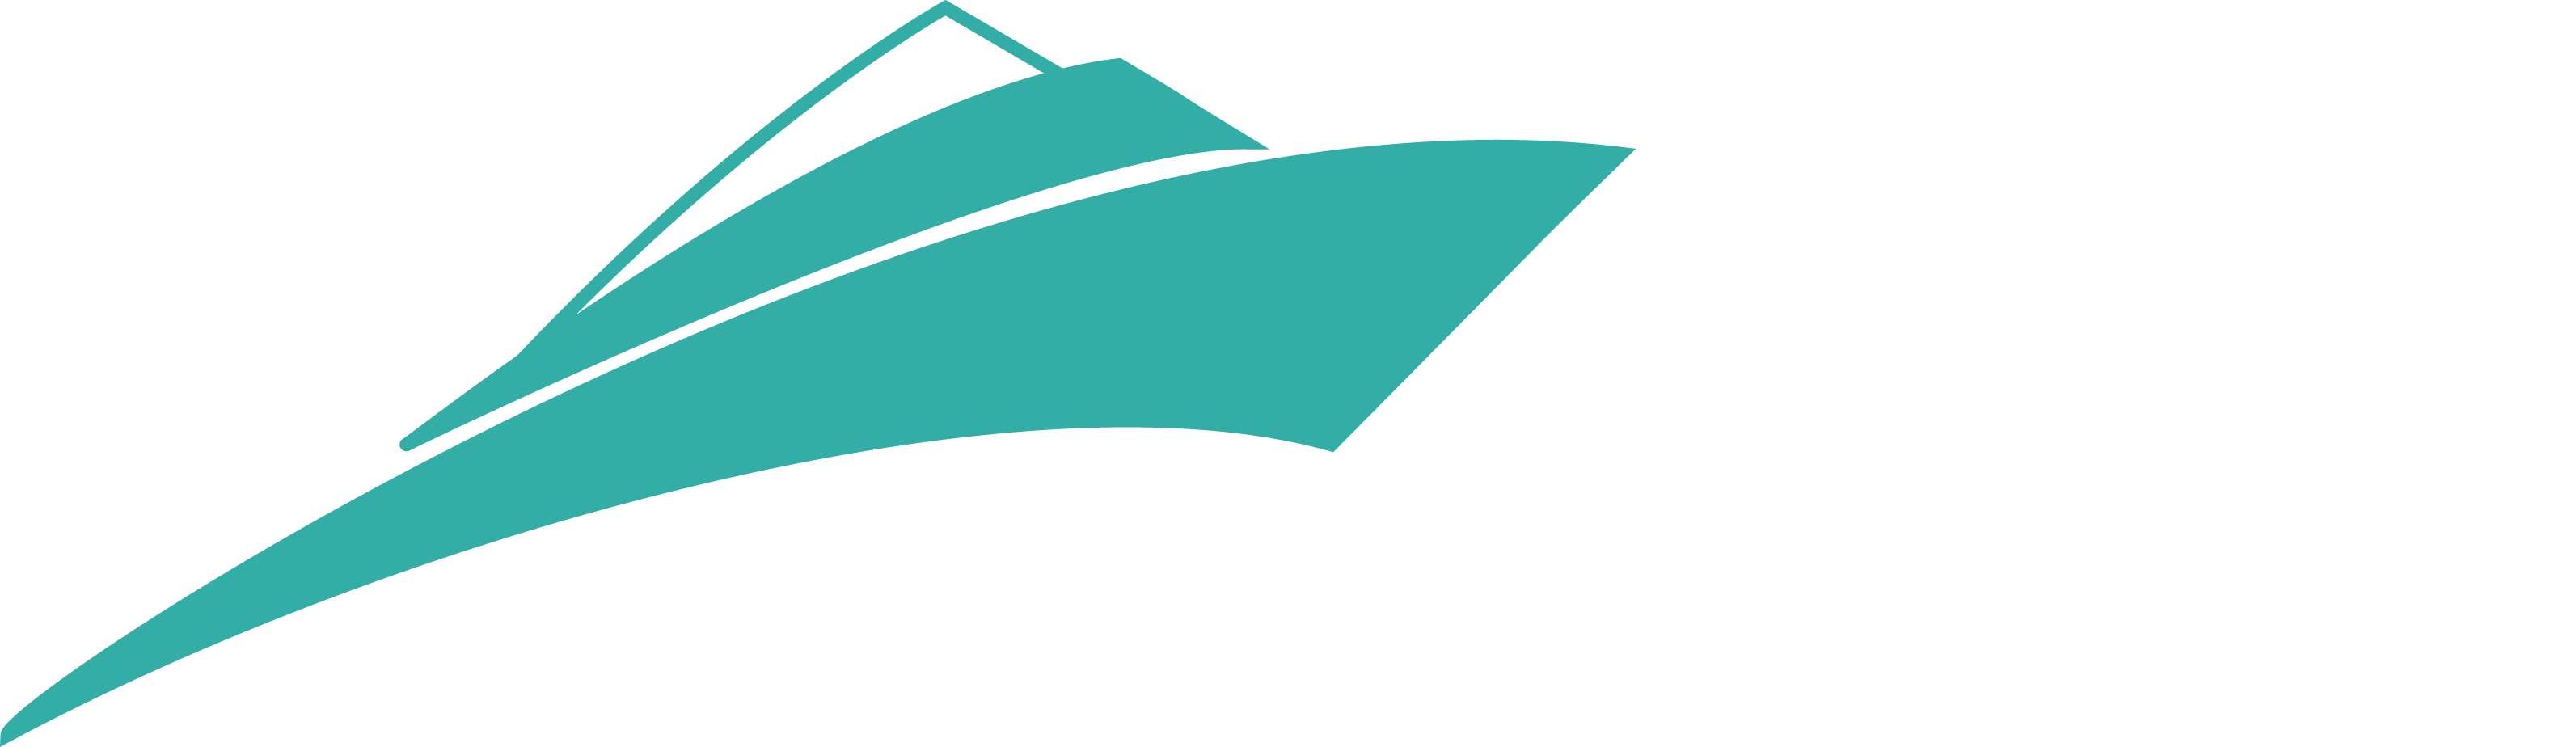 sailing yacht b